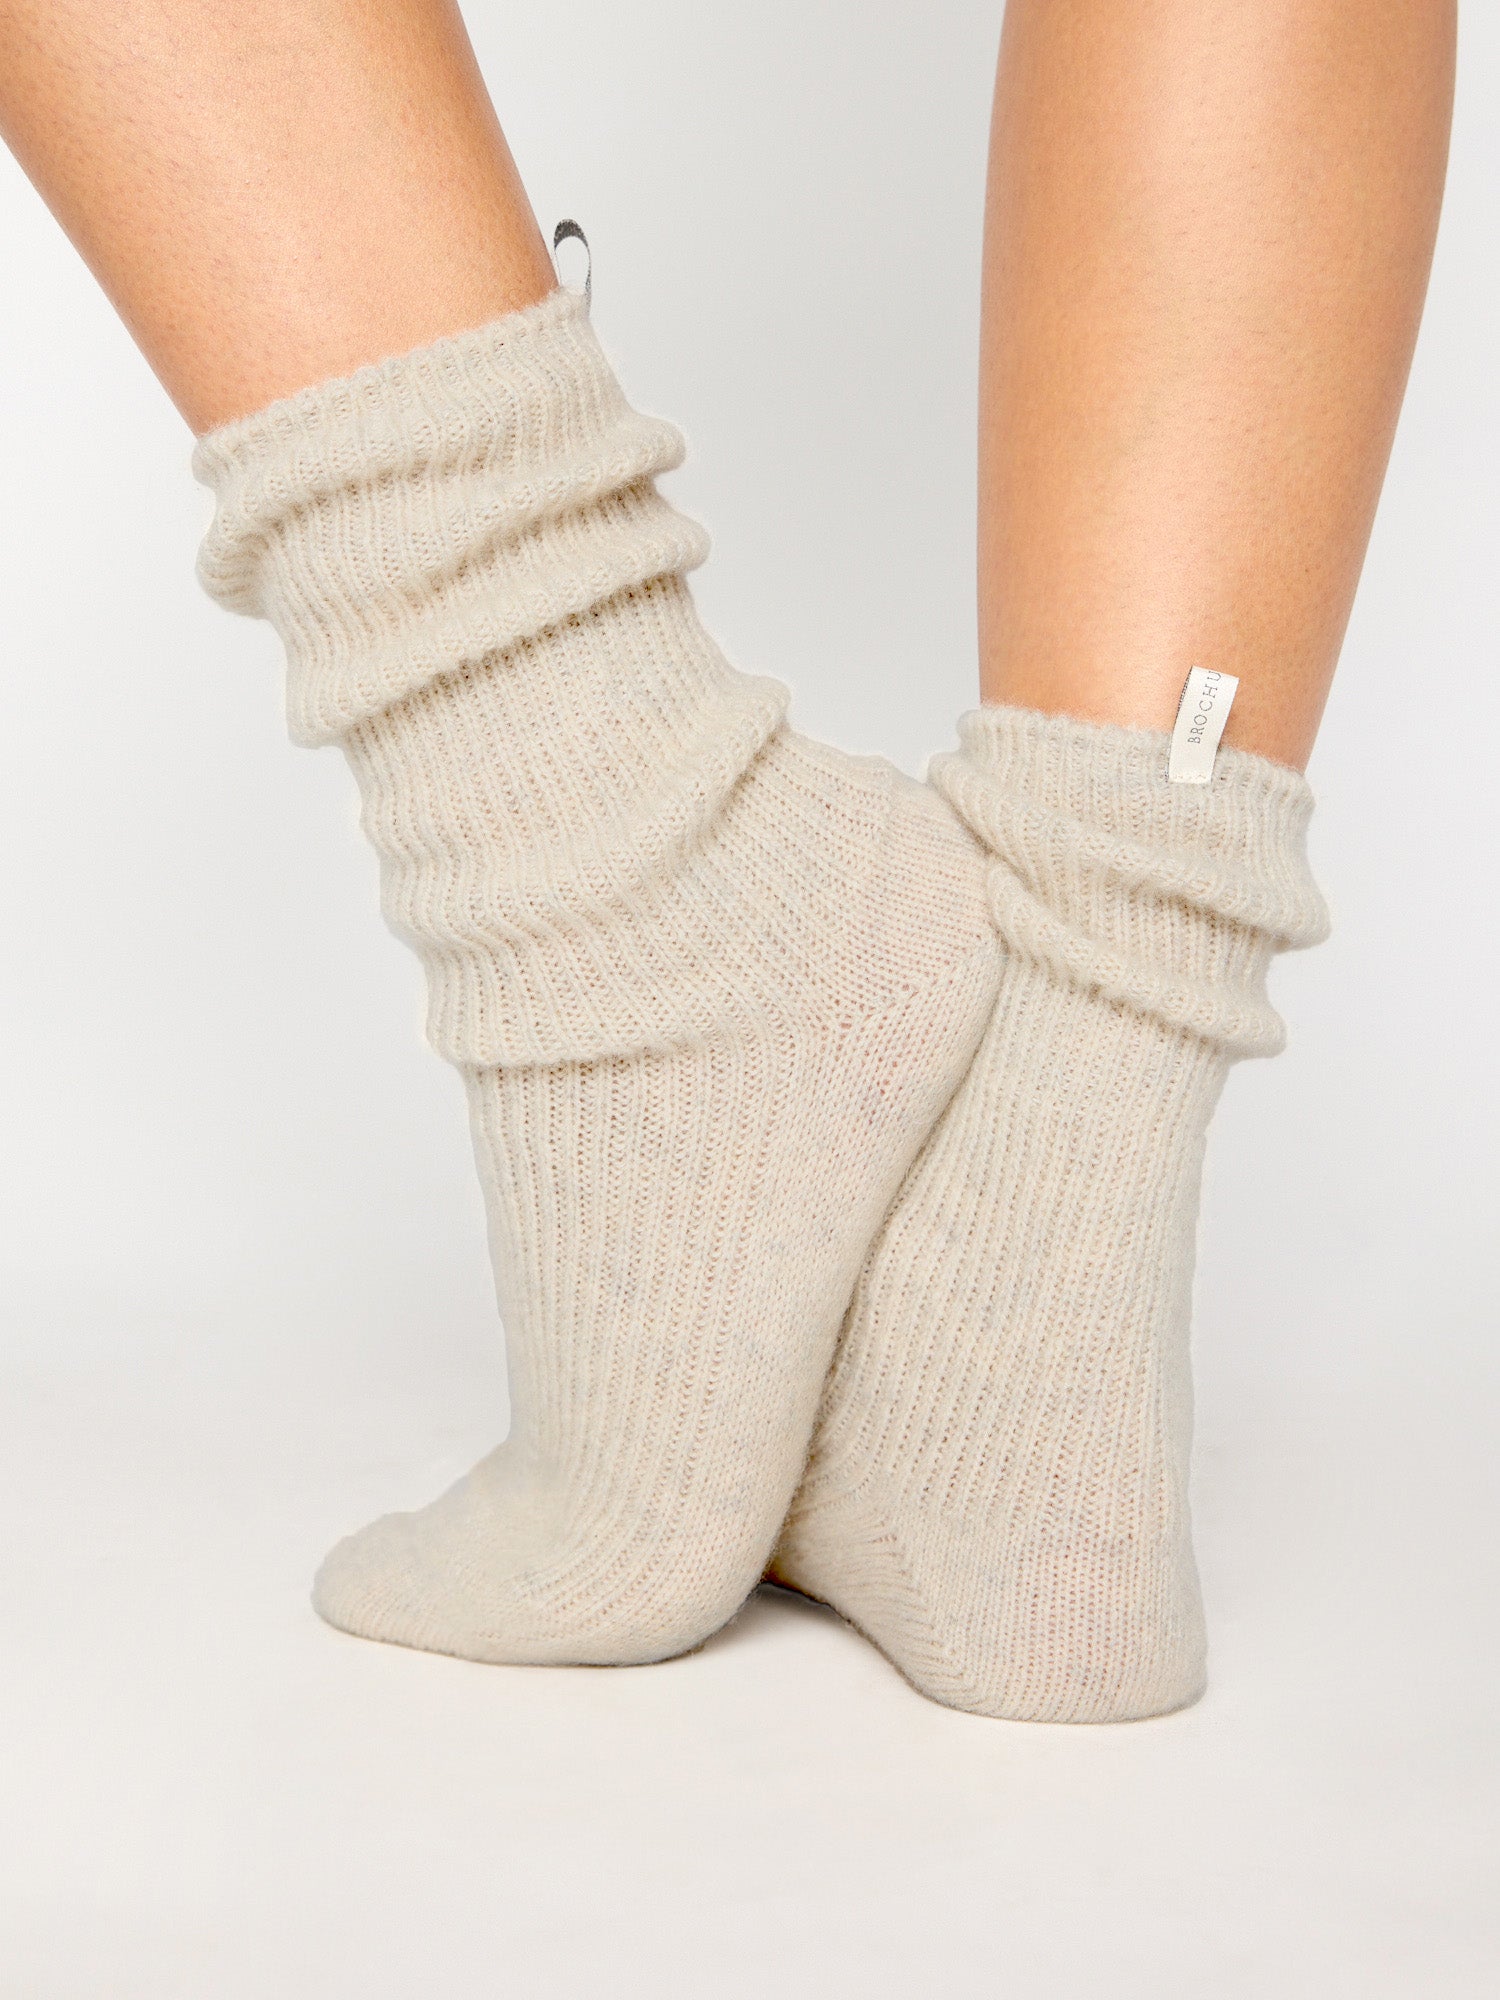 Women's Ankle Socks, Women's Accessories